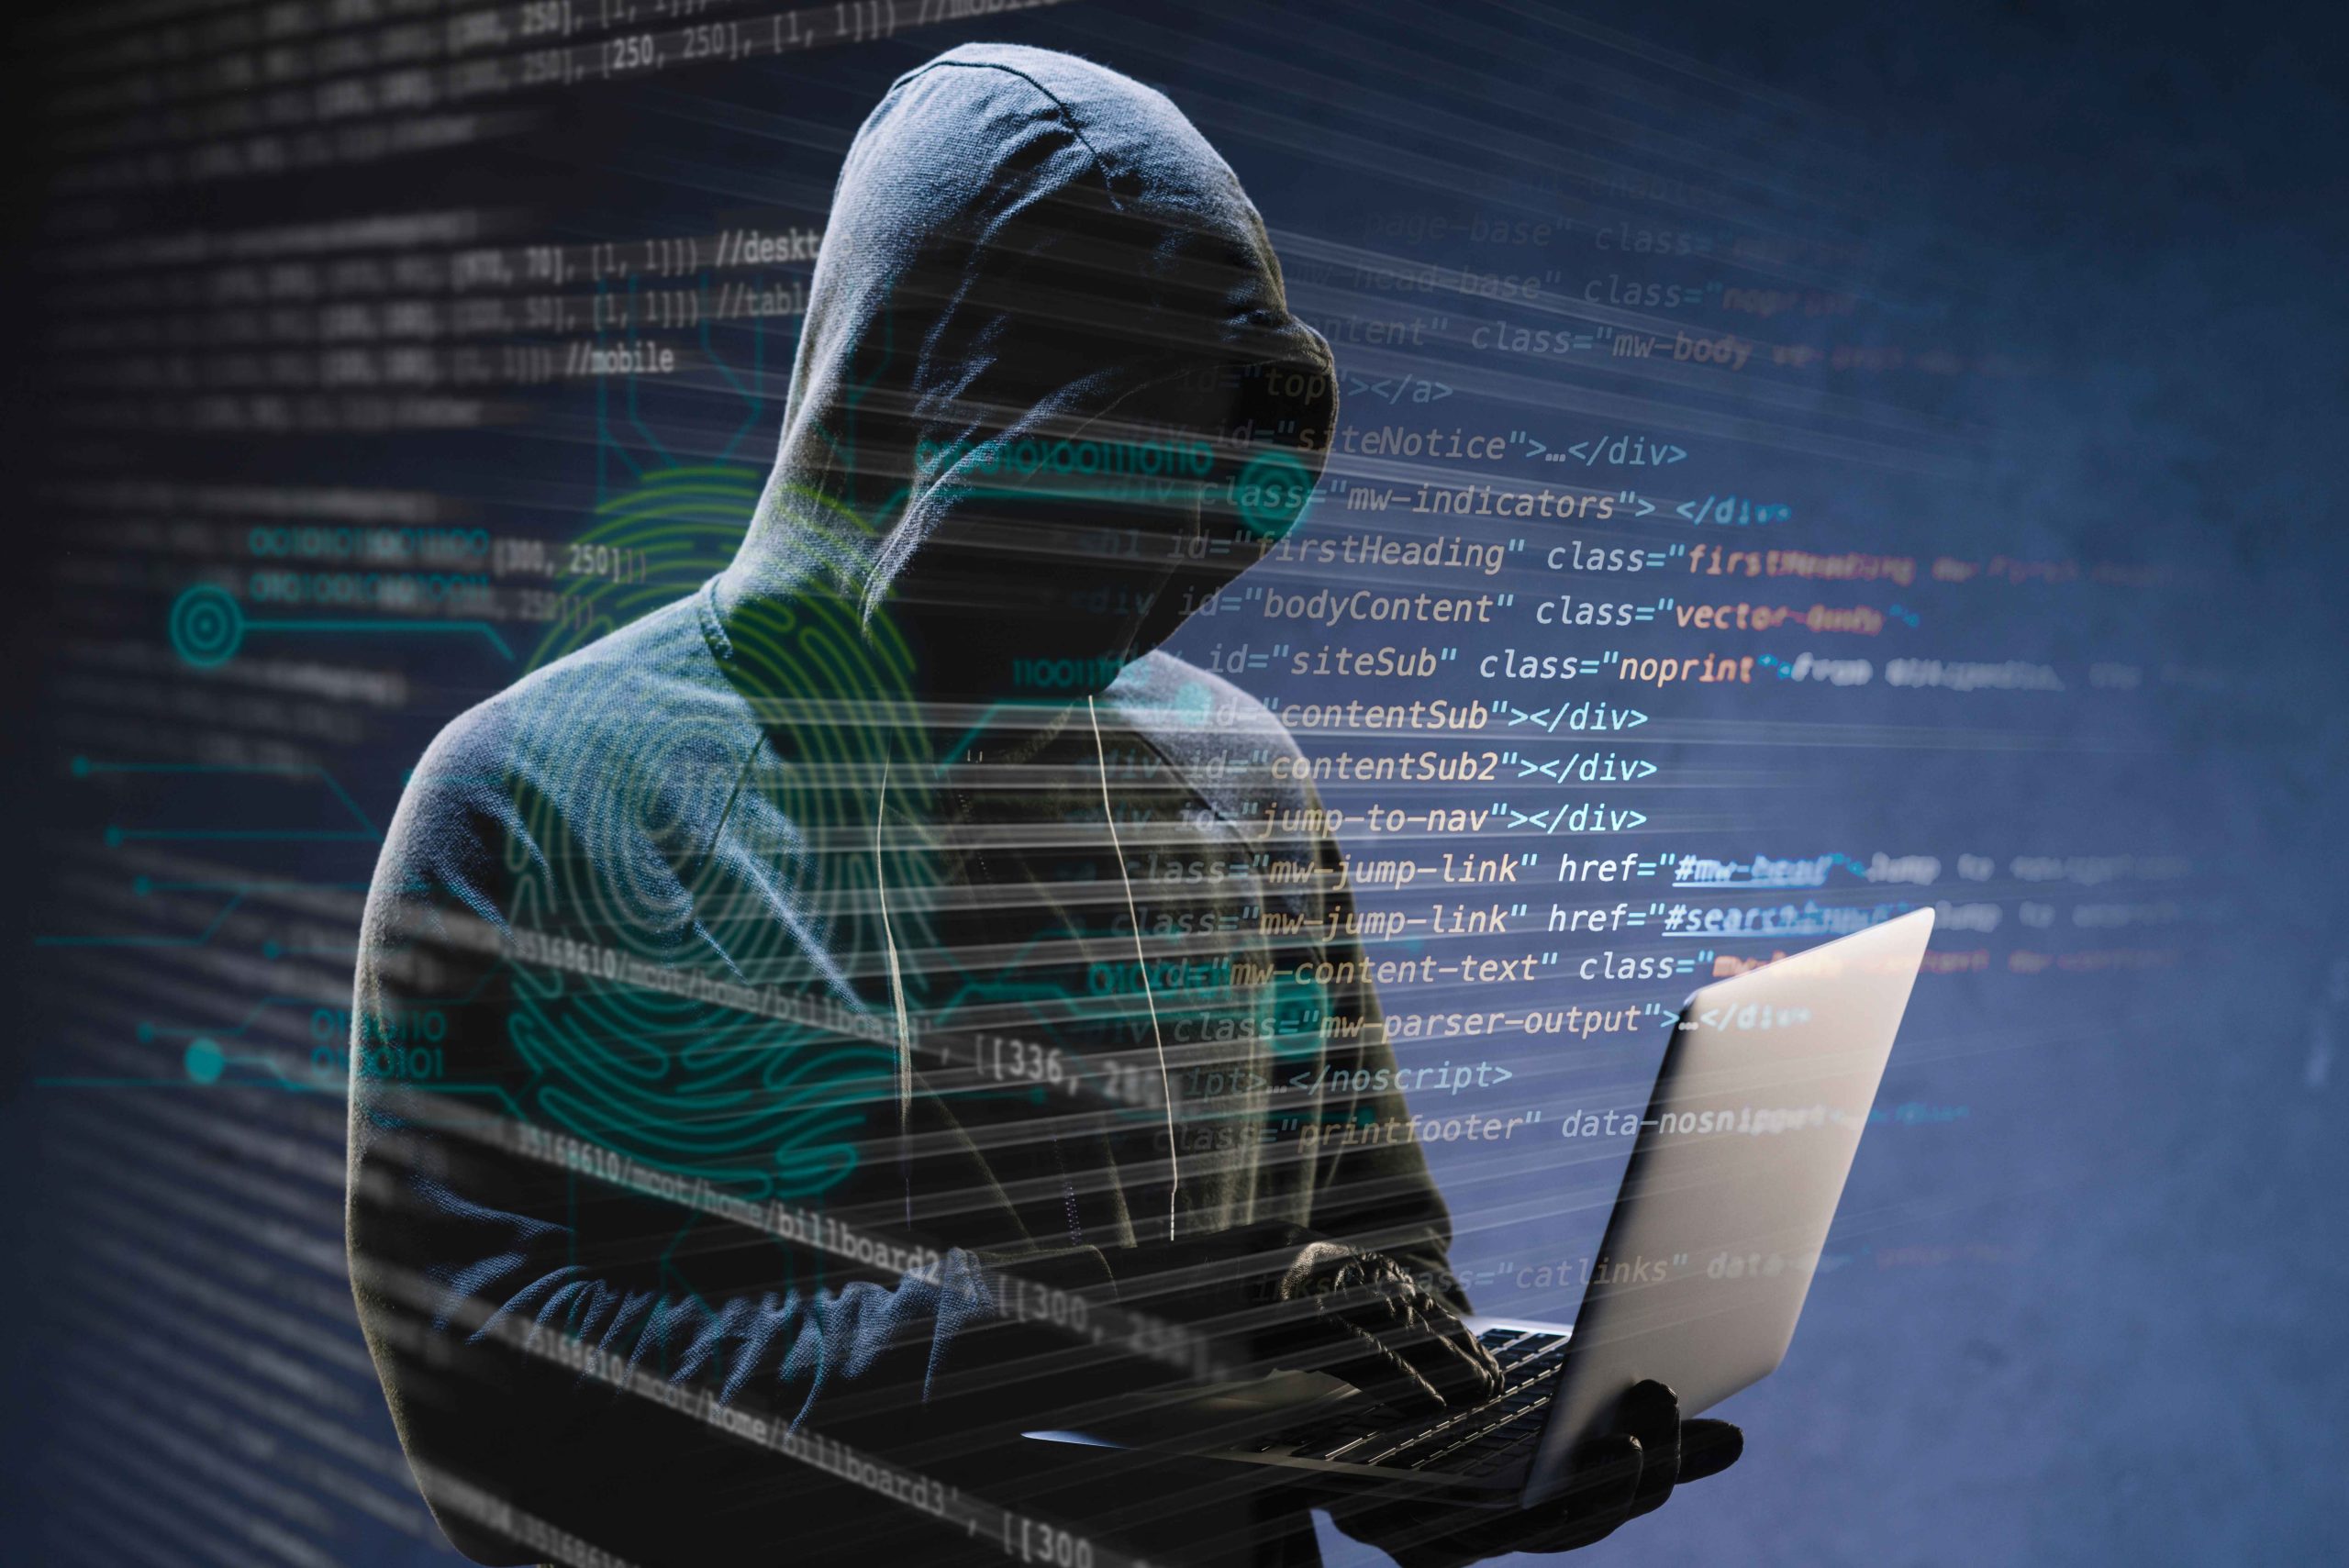 Ataki typu spear phishing dotknęły 50% firm na całym świecie. Nowe badania Barracuda Networks